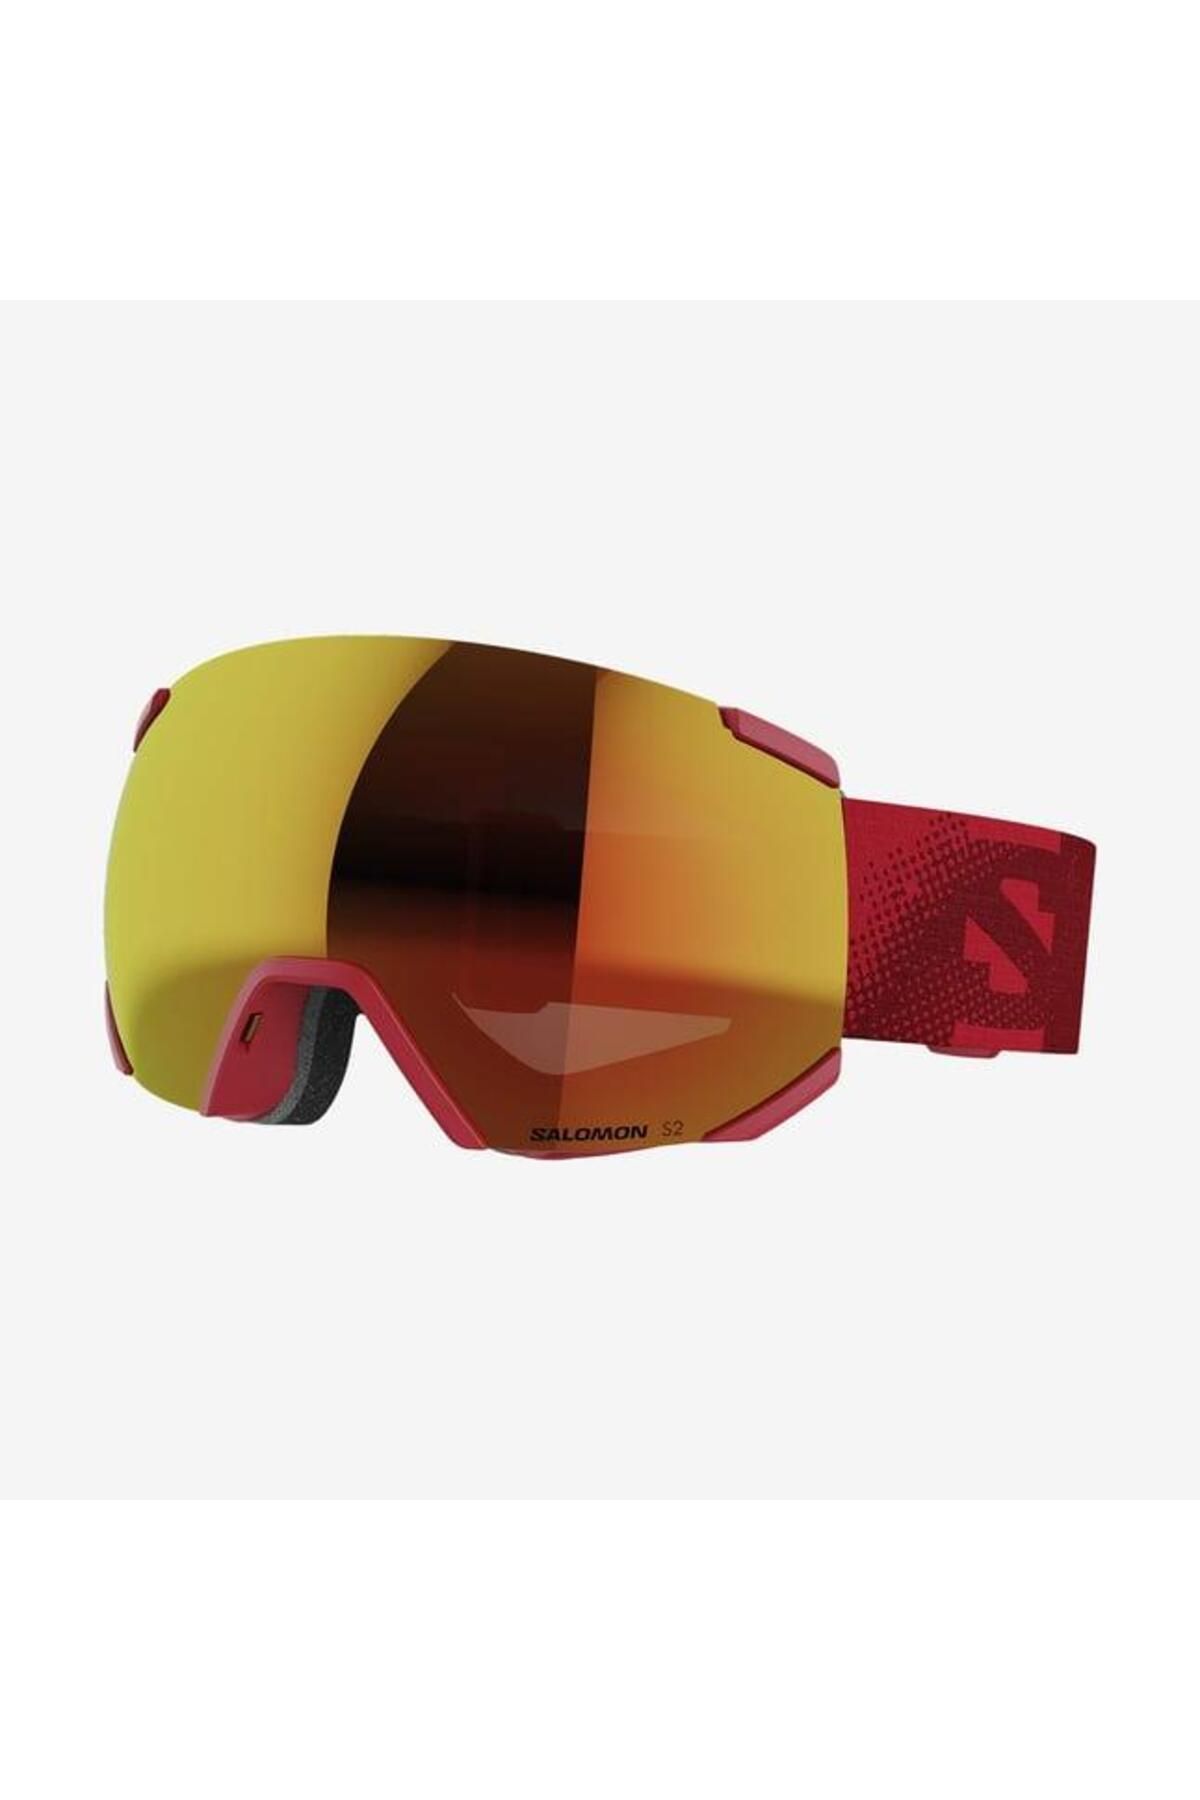 Salomon Radium Ml Kayak Gözlüğü